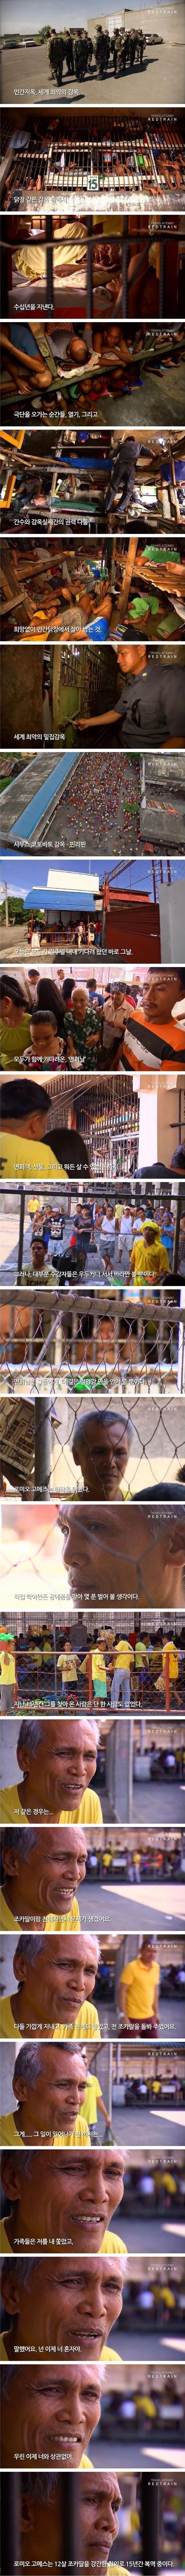 필리핀 감옥에 15년간 갇혀있는 이유.jpg